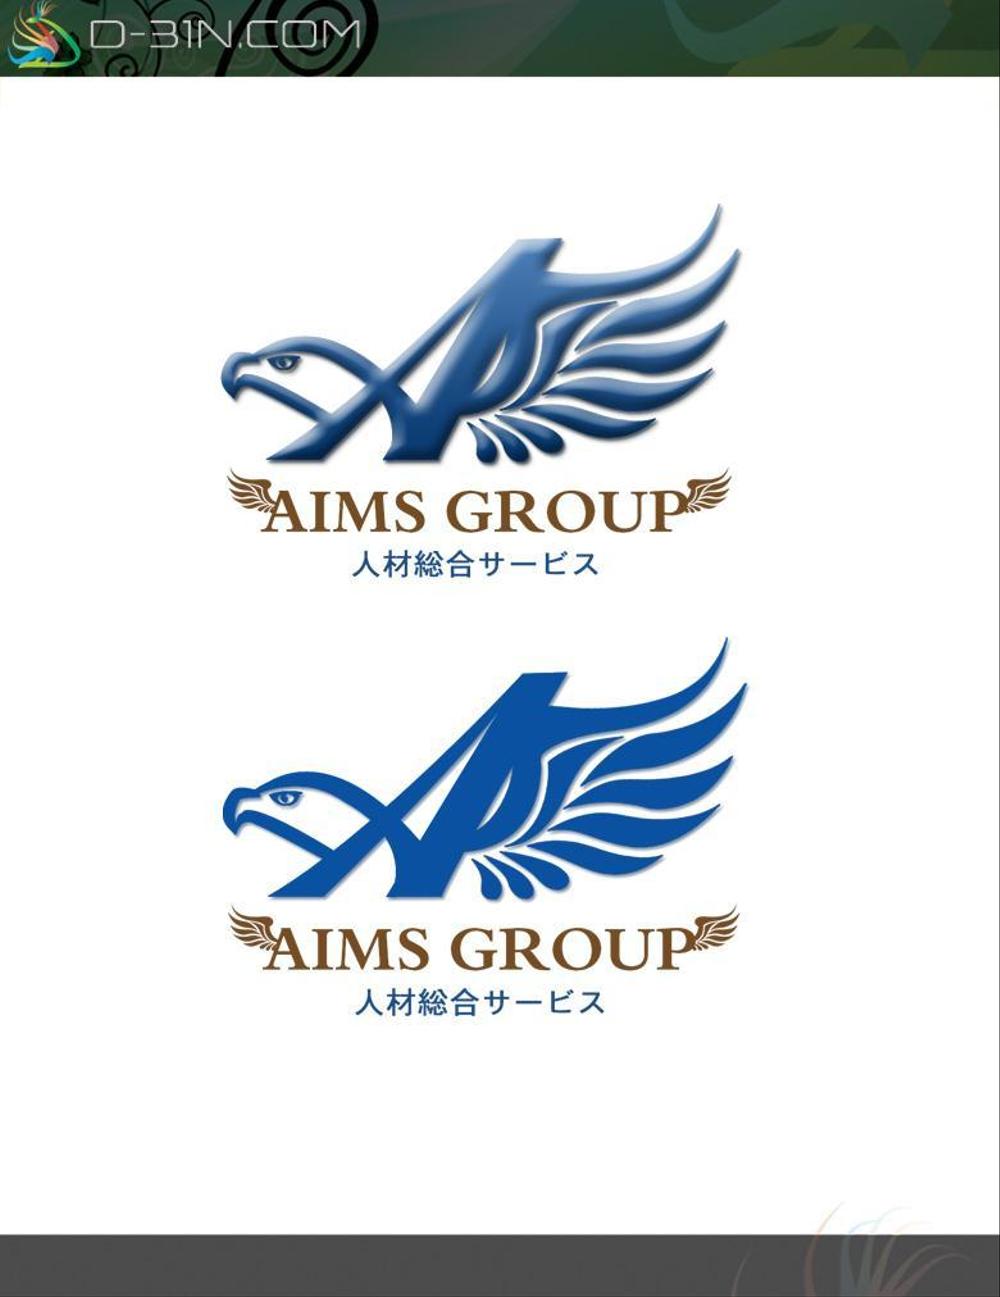 aims-logo01.jpg